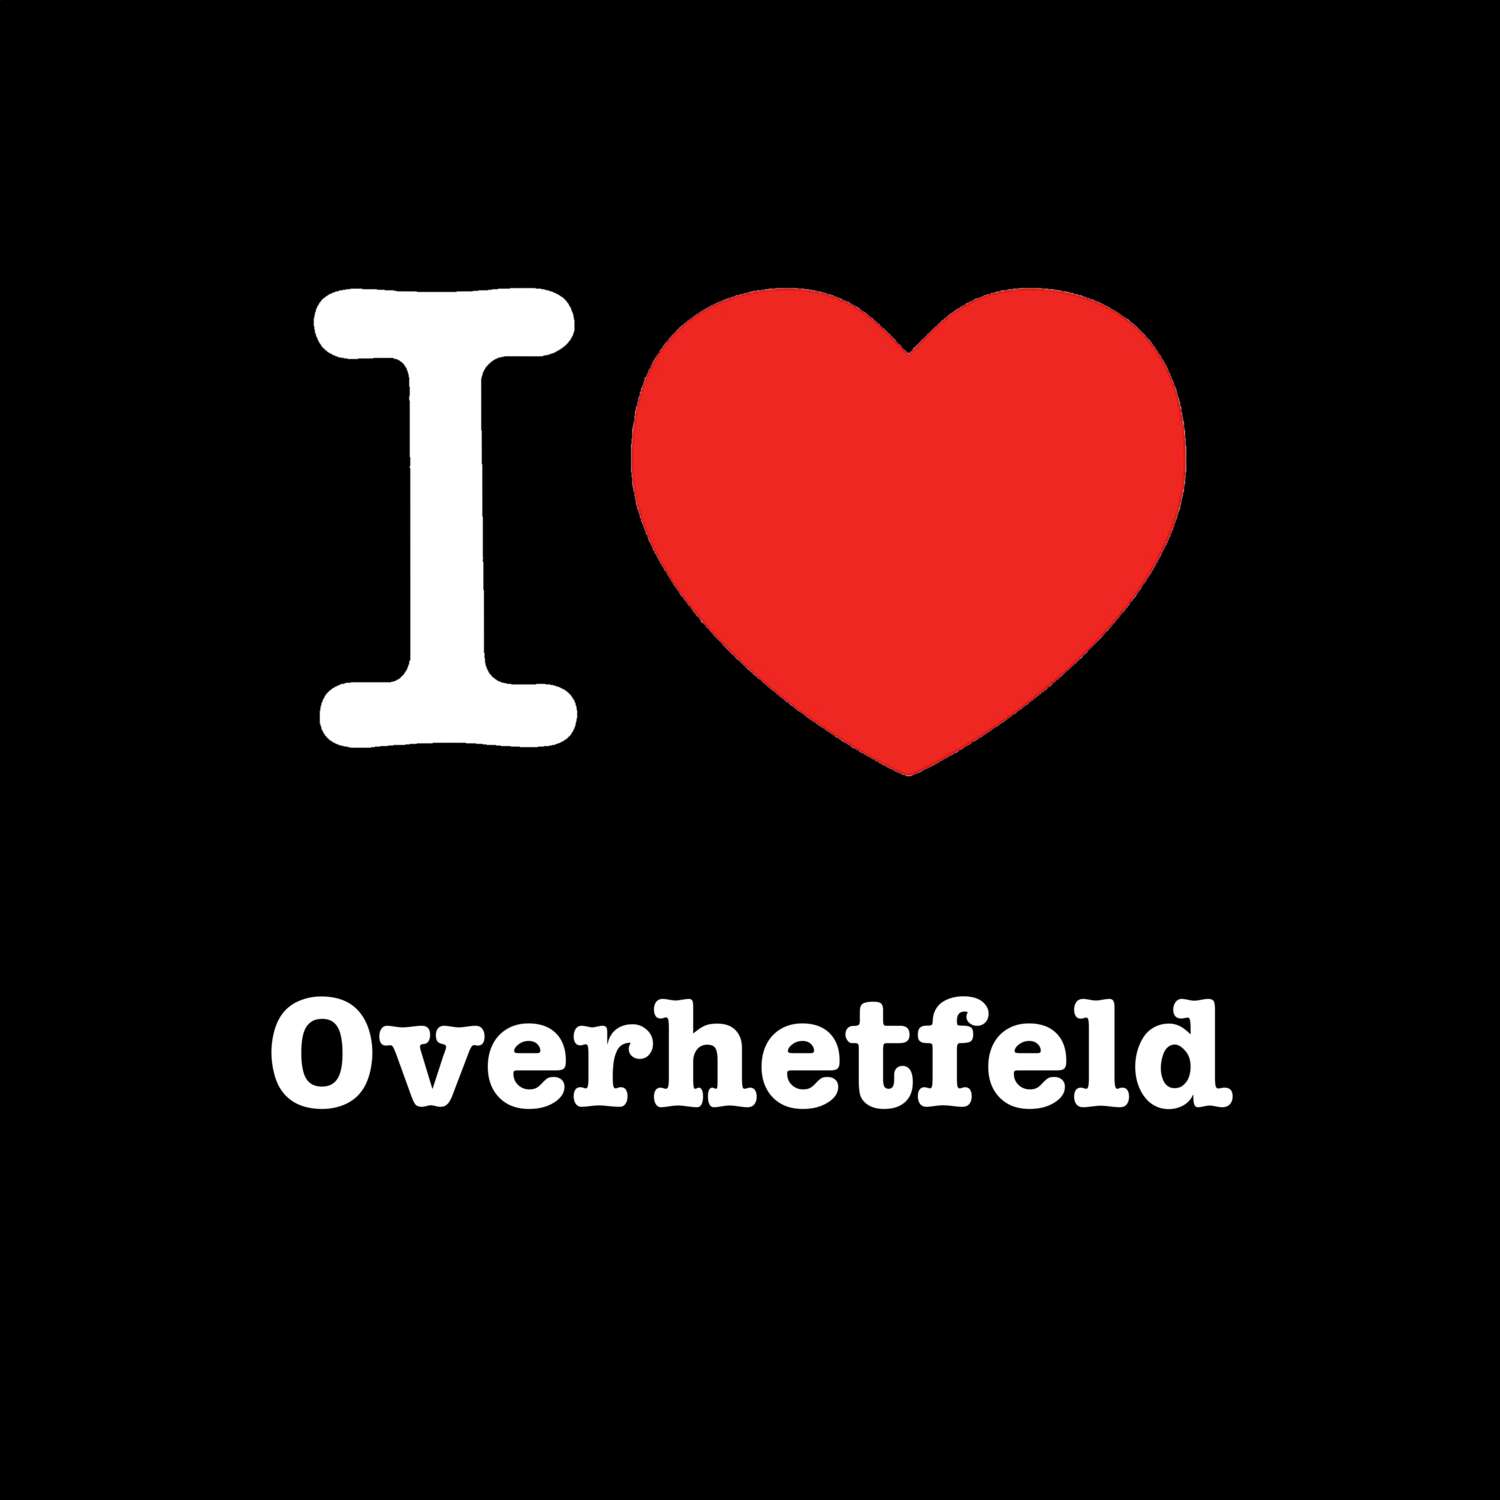 Overhetfeld T-Shirt »I love«